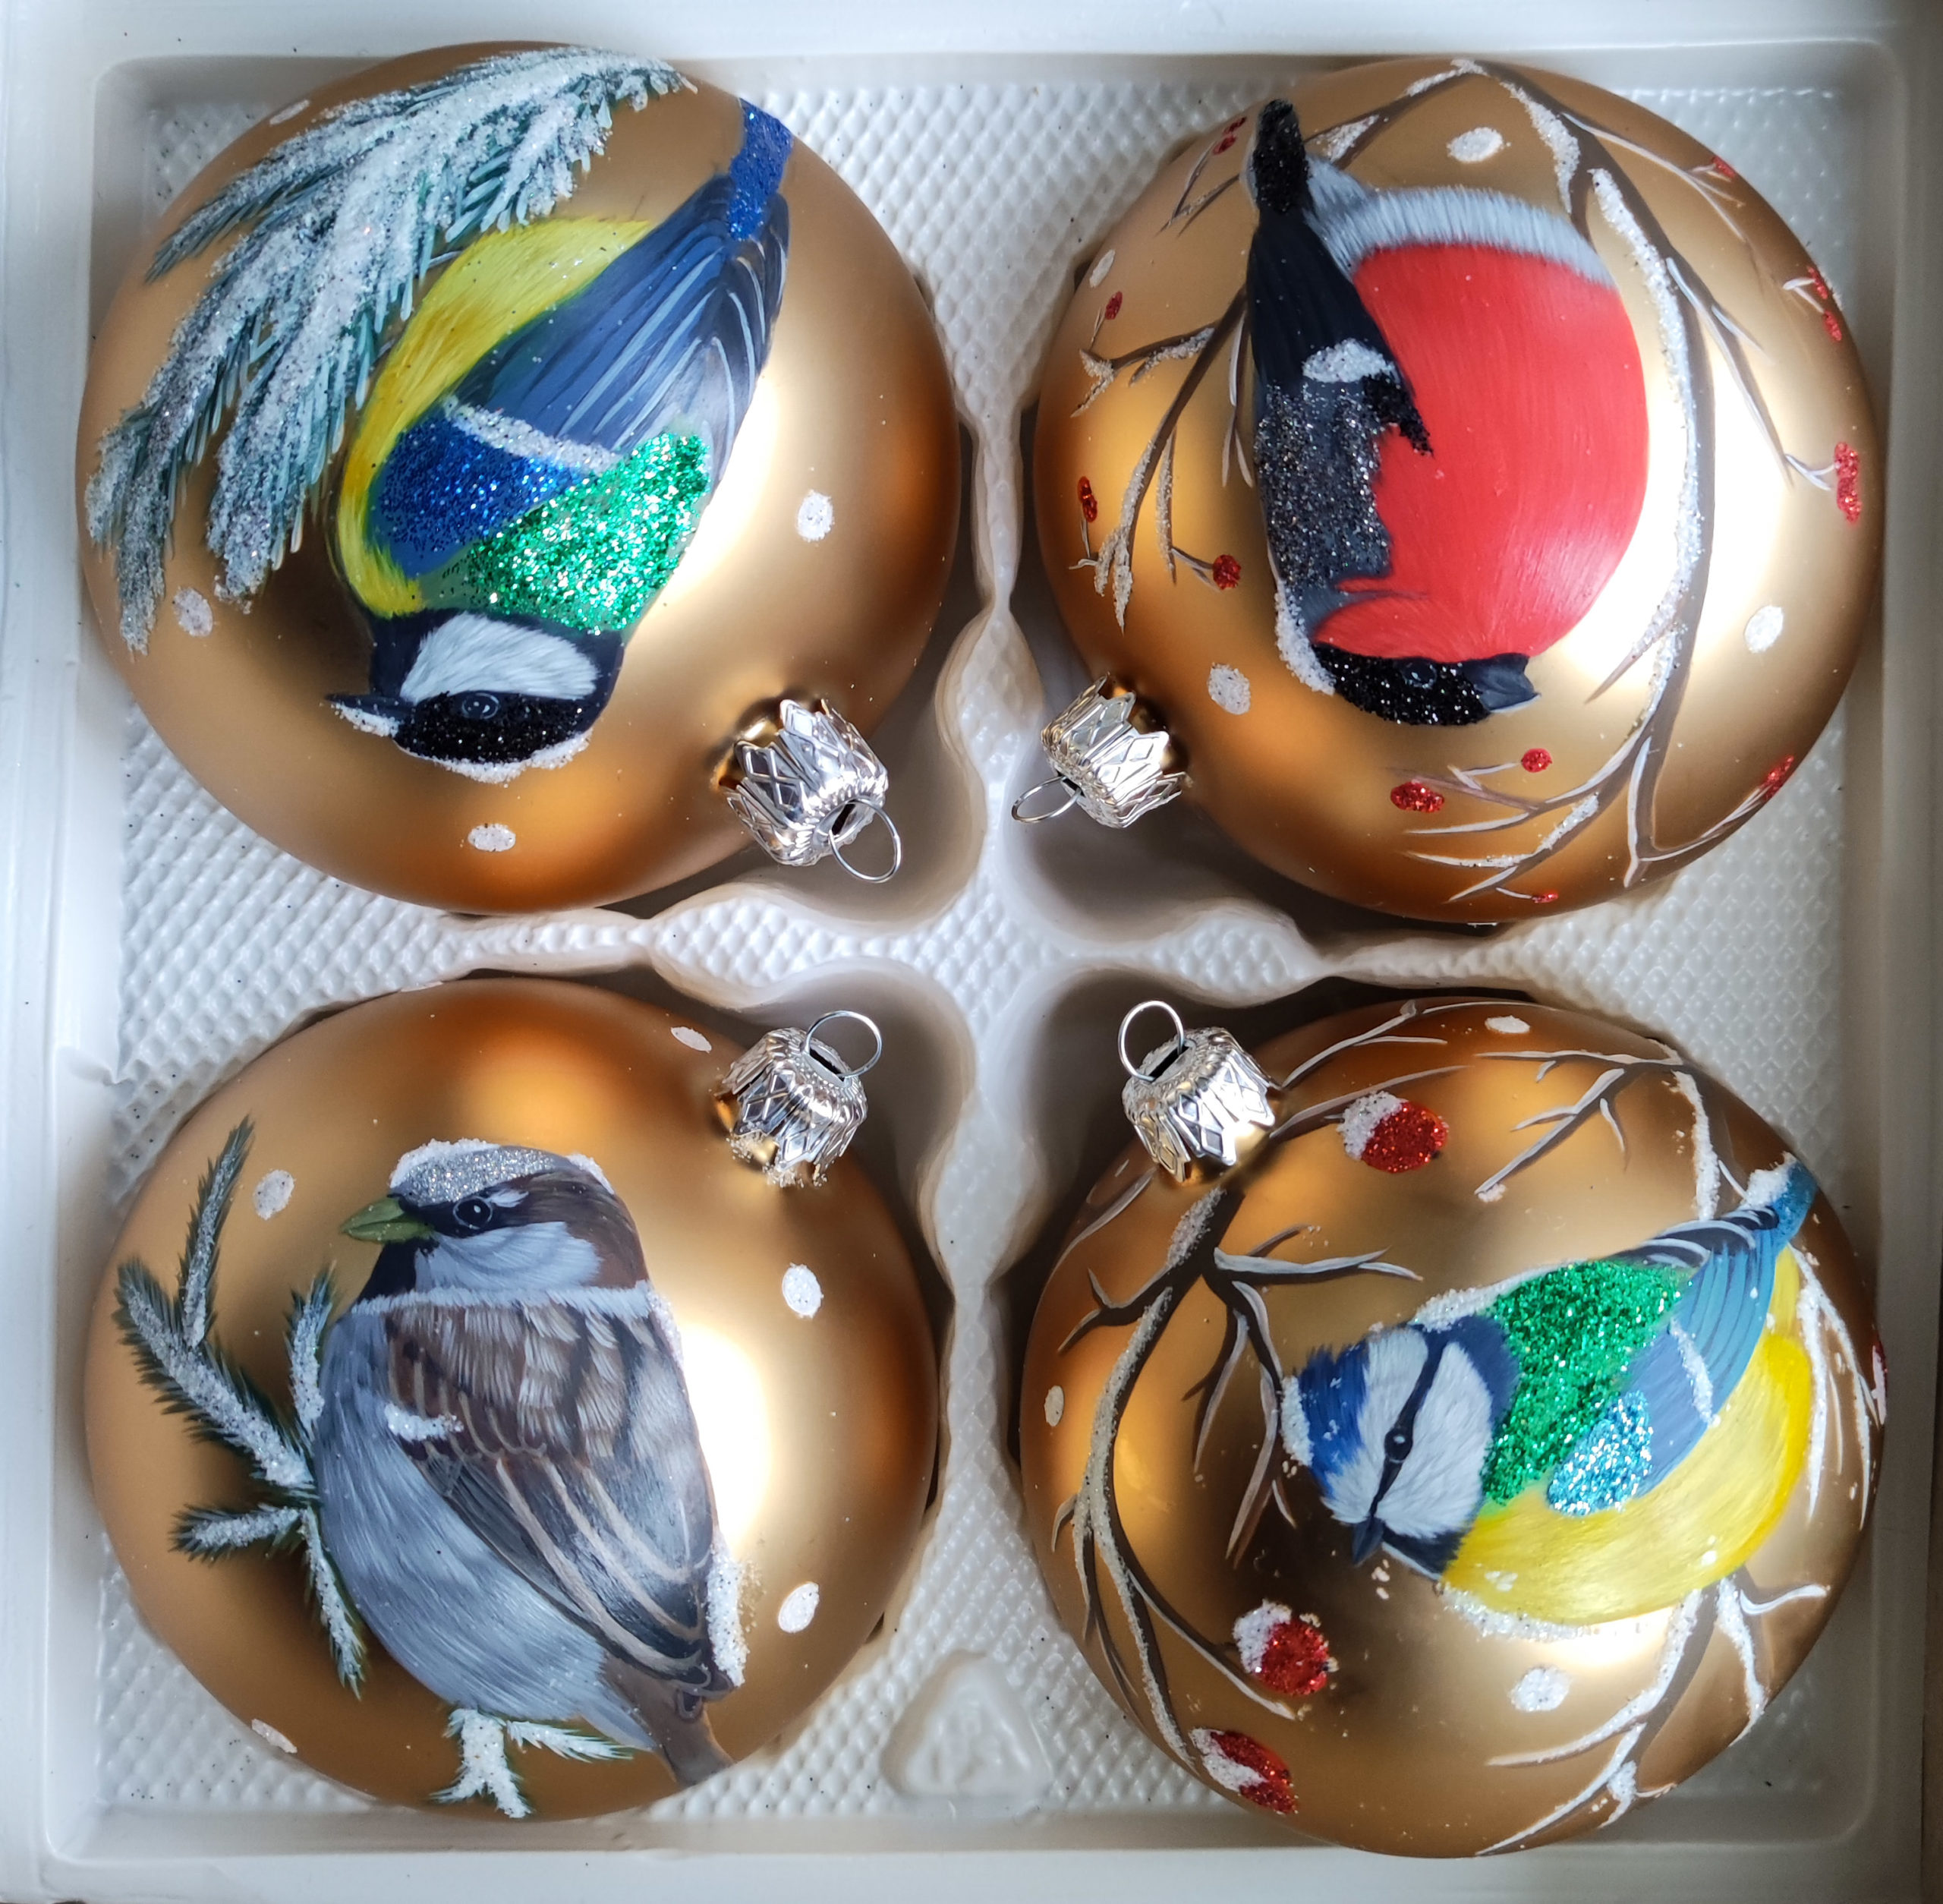 Cztery ręcznie malowane bombki z ptakami na gałązkach w kolorze złotym. Górna strona, od lewej: bogatka, gil. Dolna strona, od lewej: wróbel, modraszka.